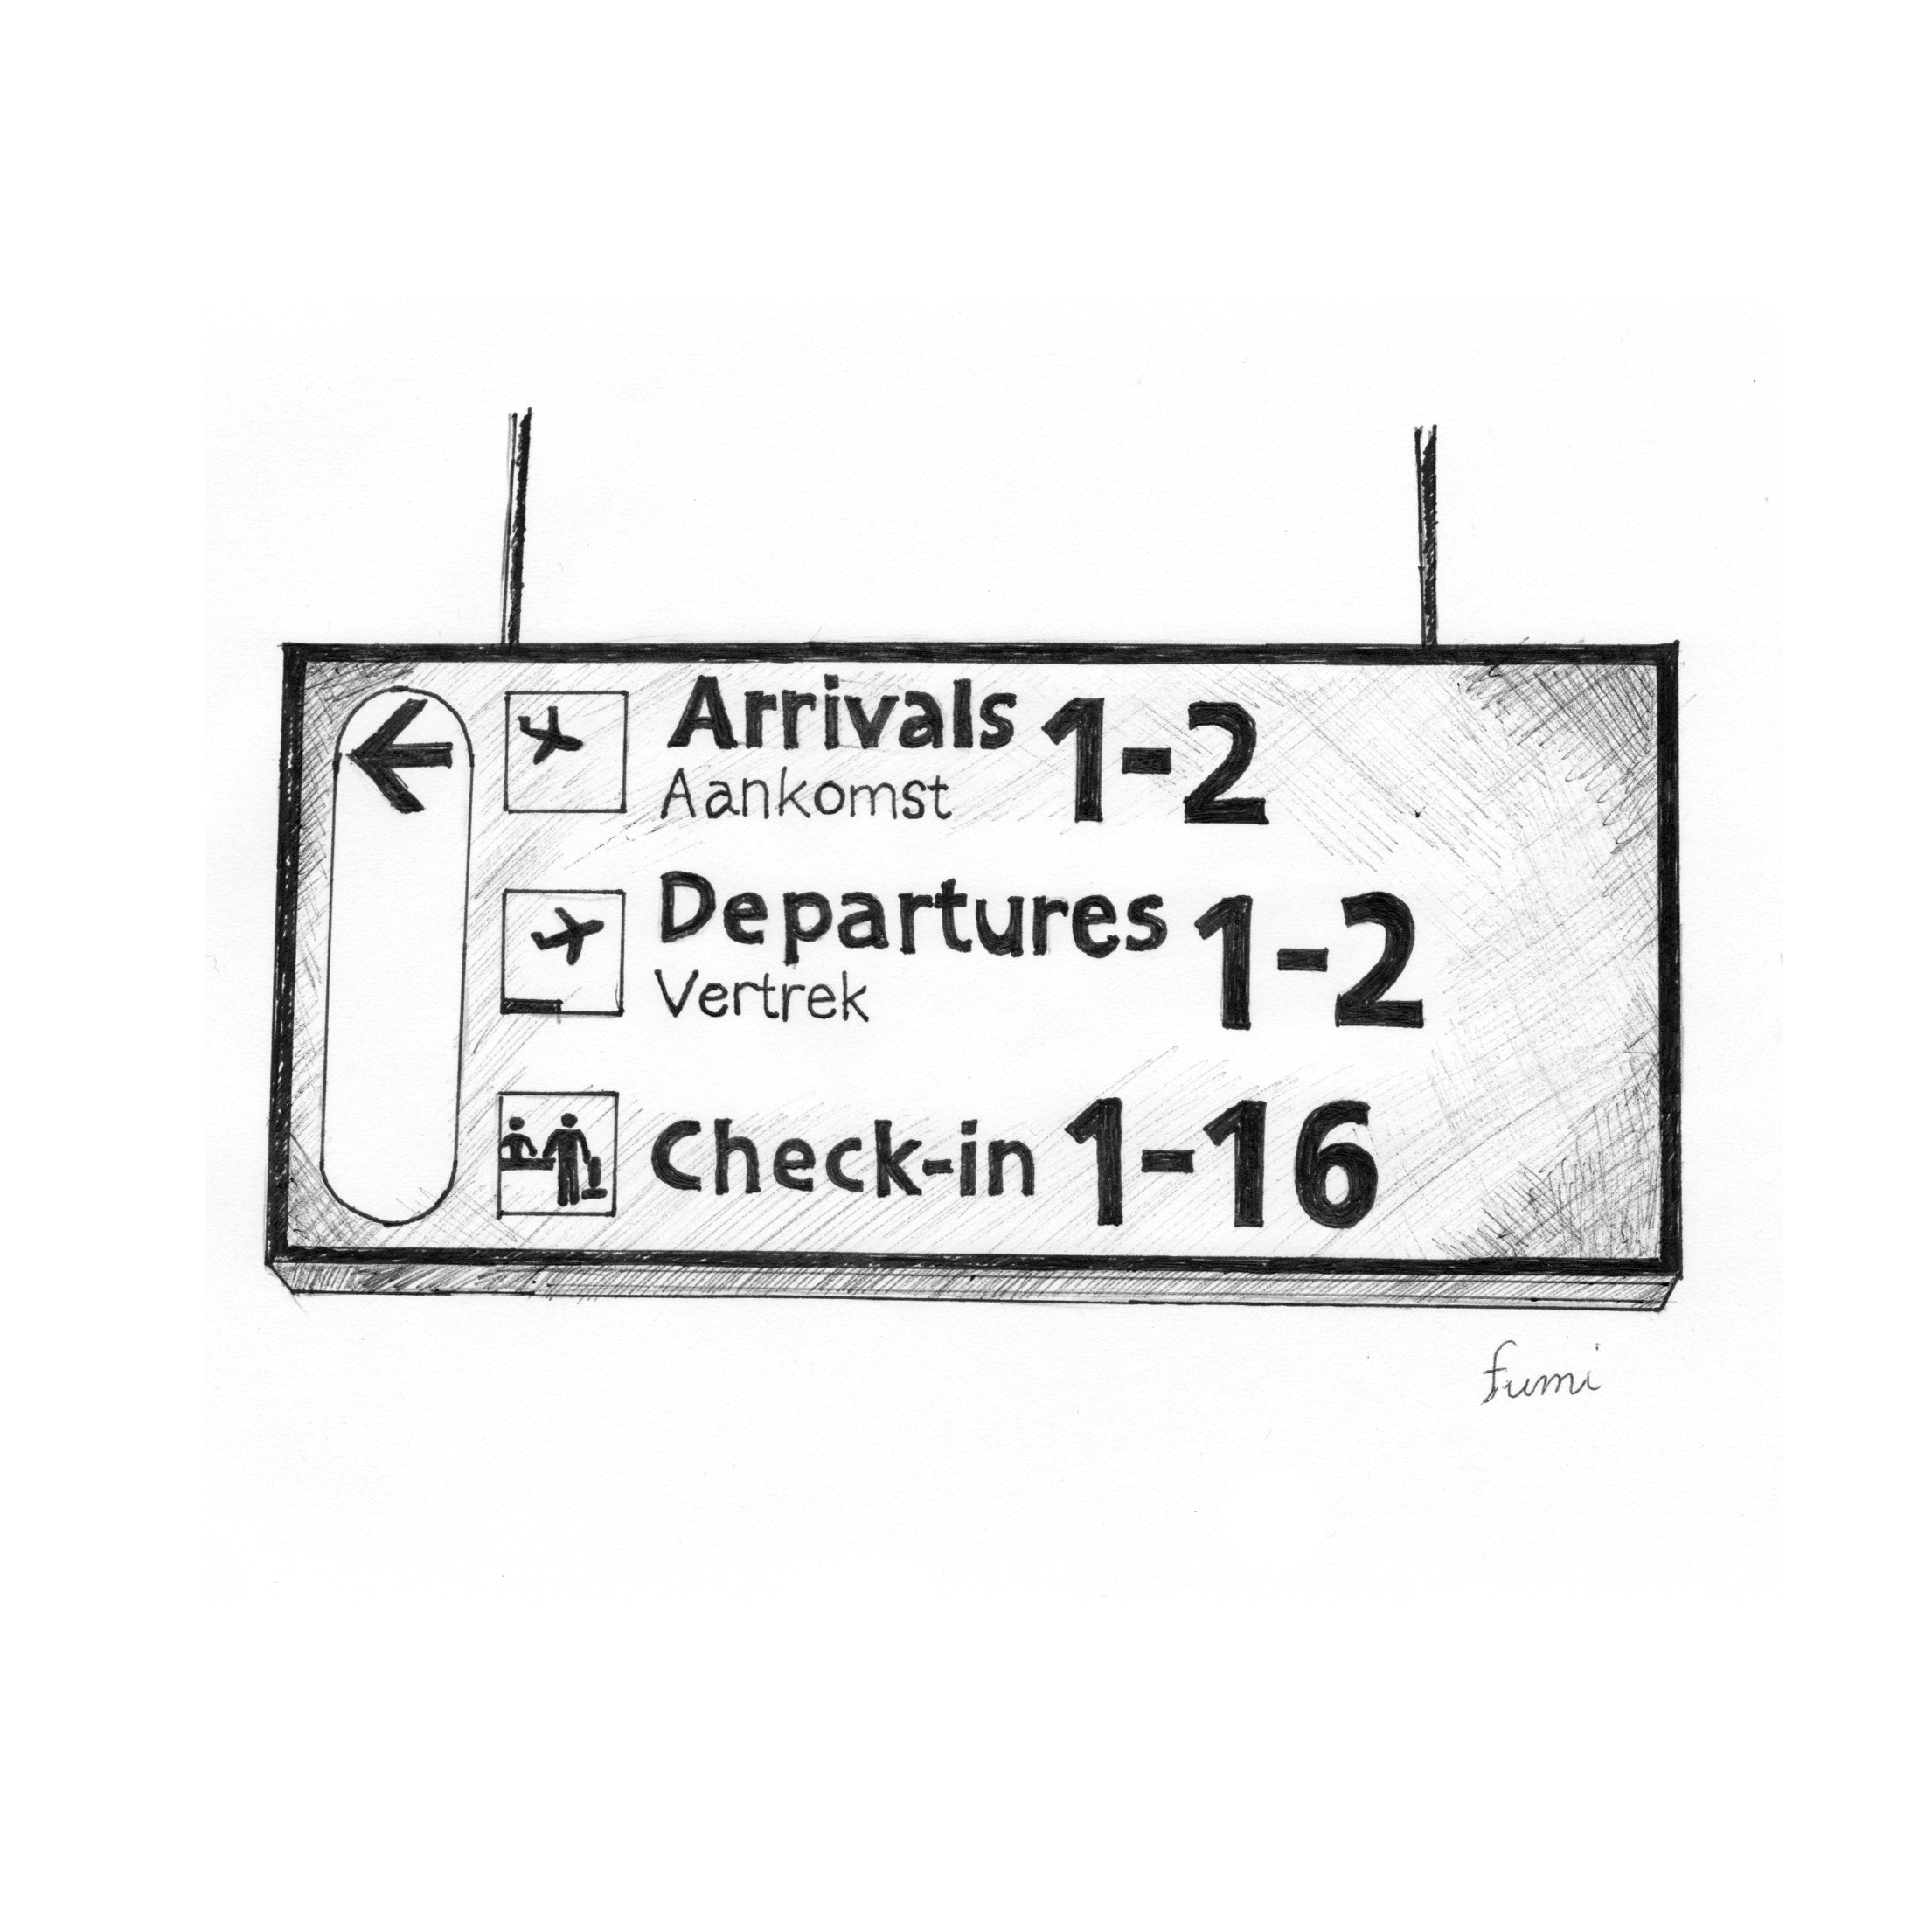 空港の気になるサインデザイン